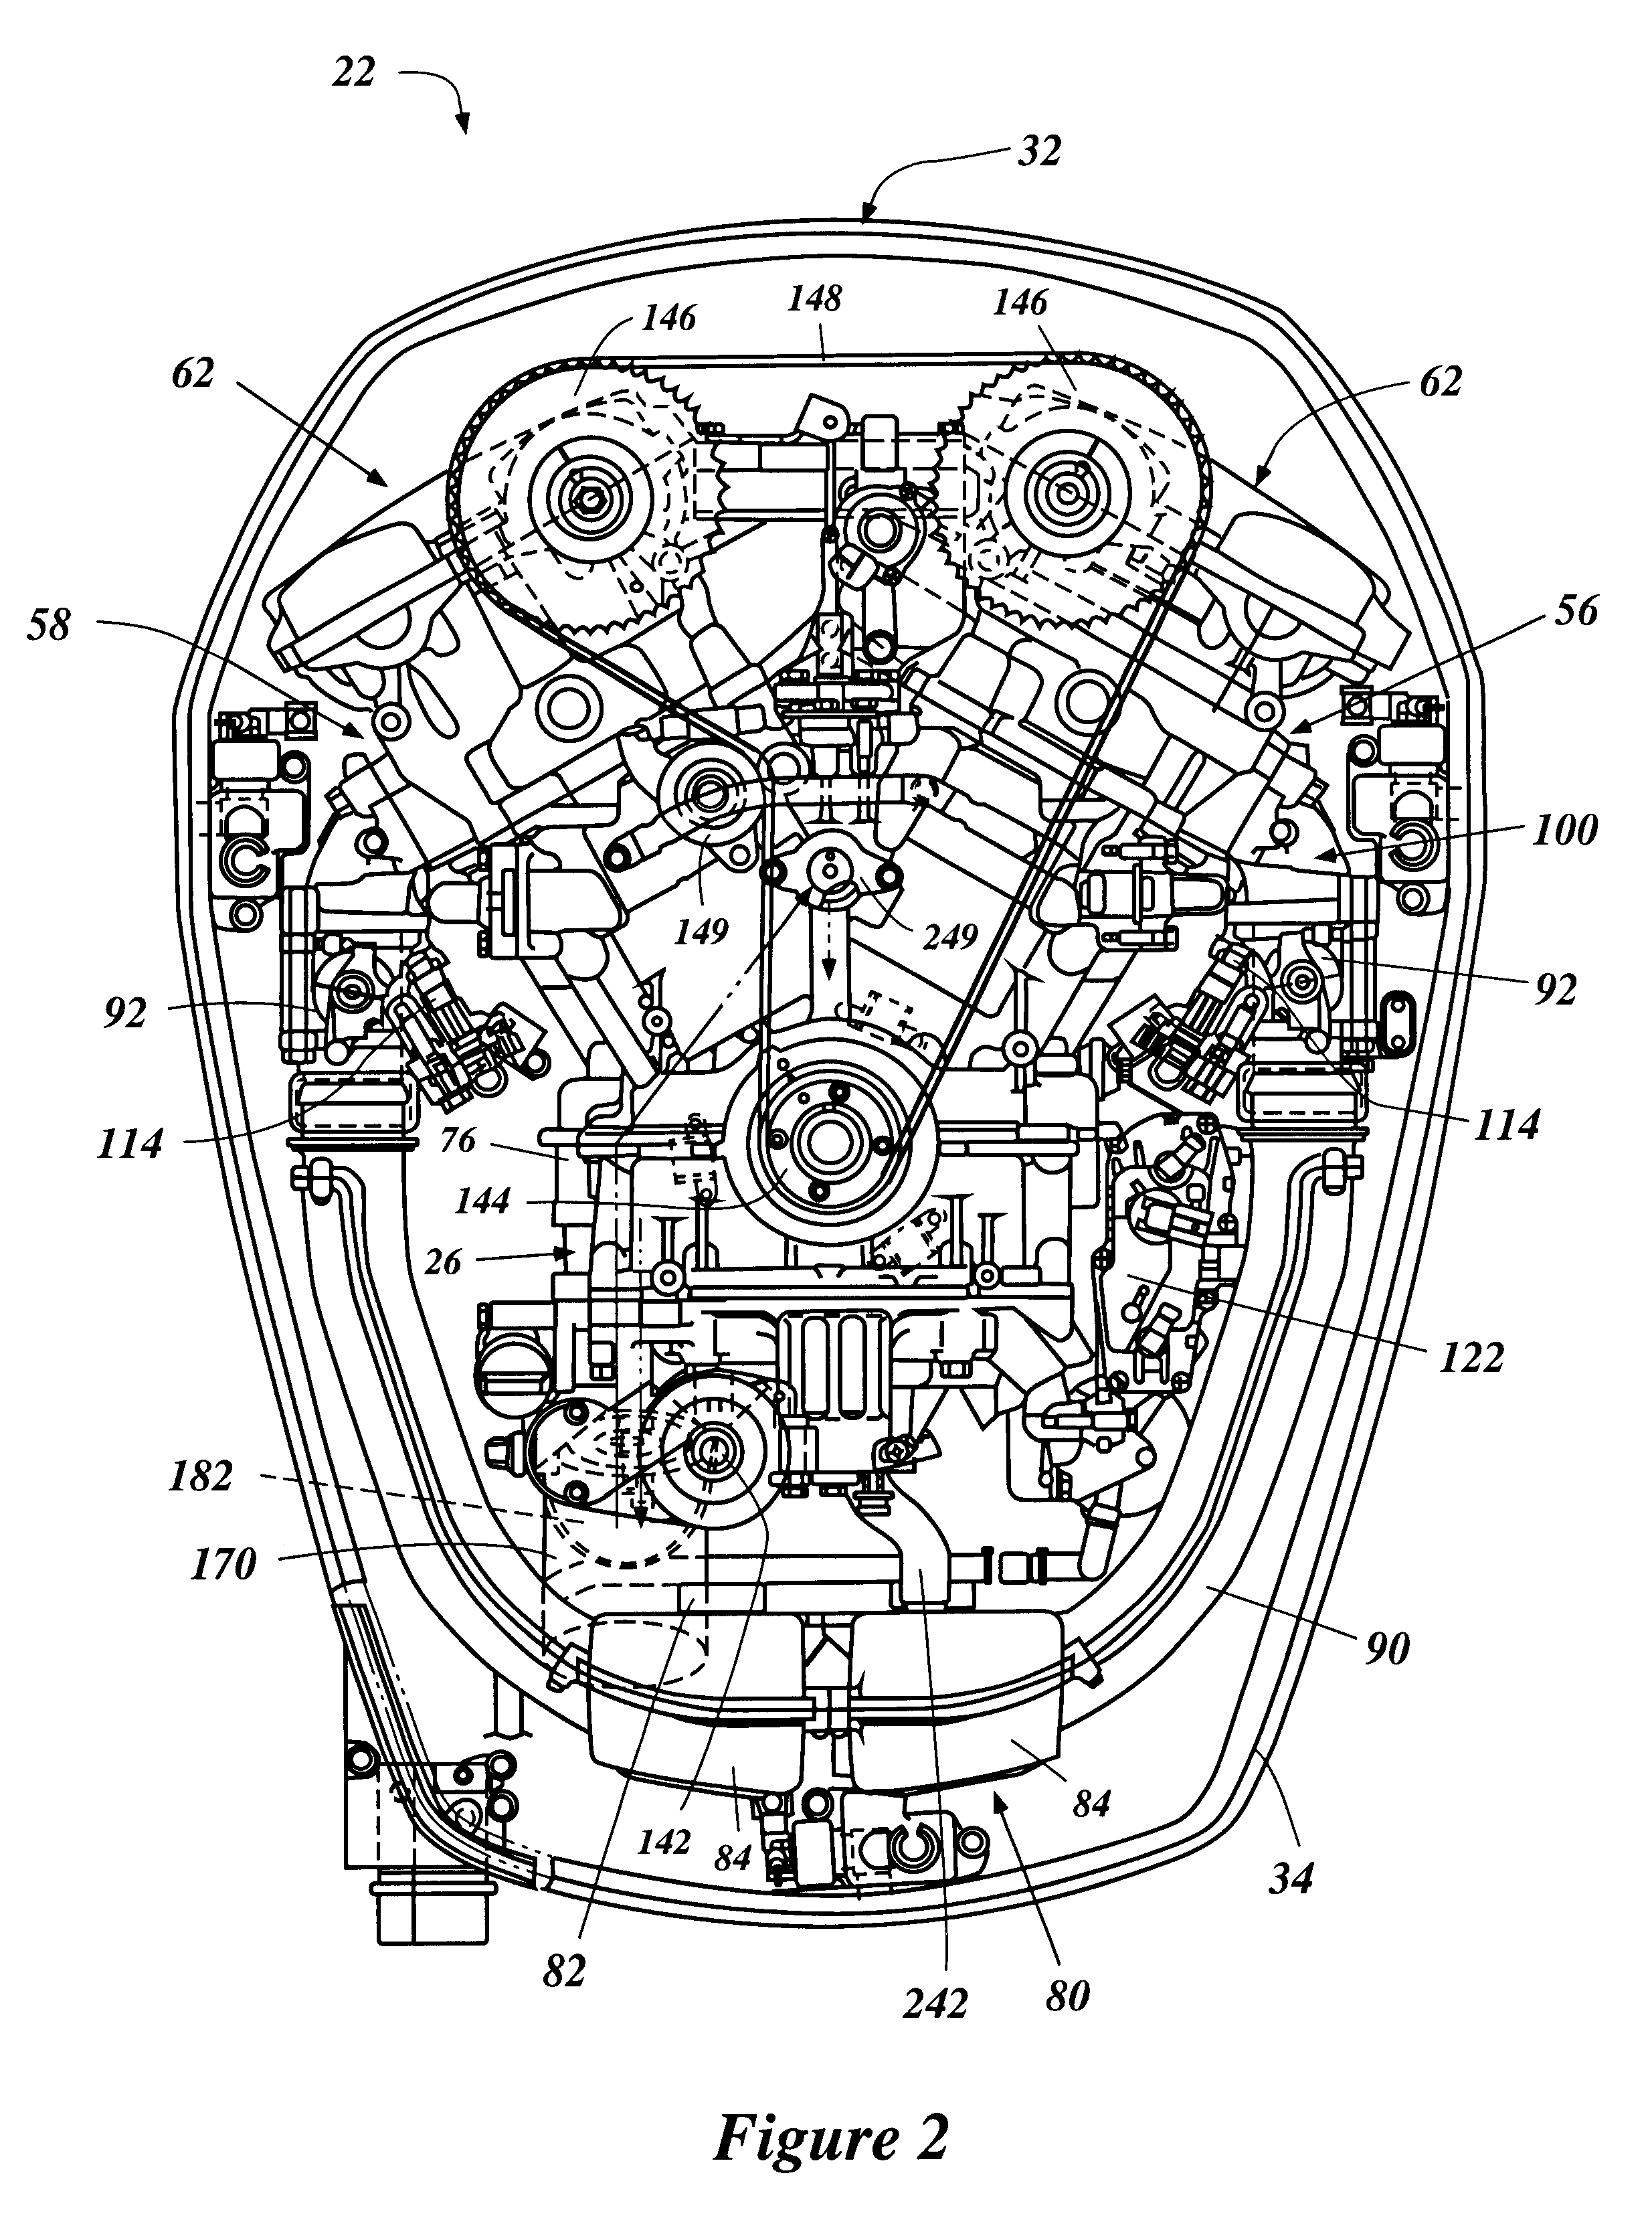 Engine component arrangement for outboard motor